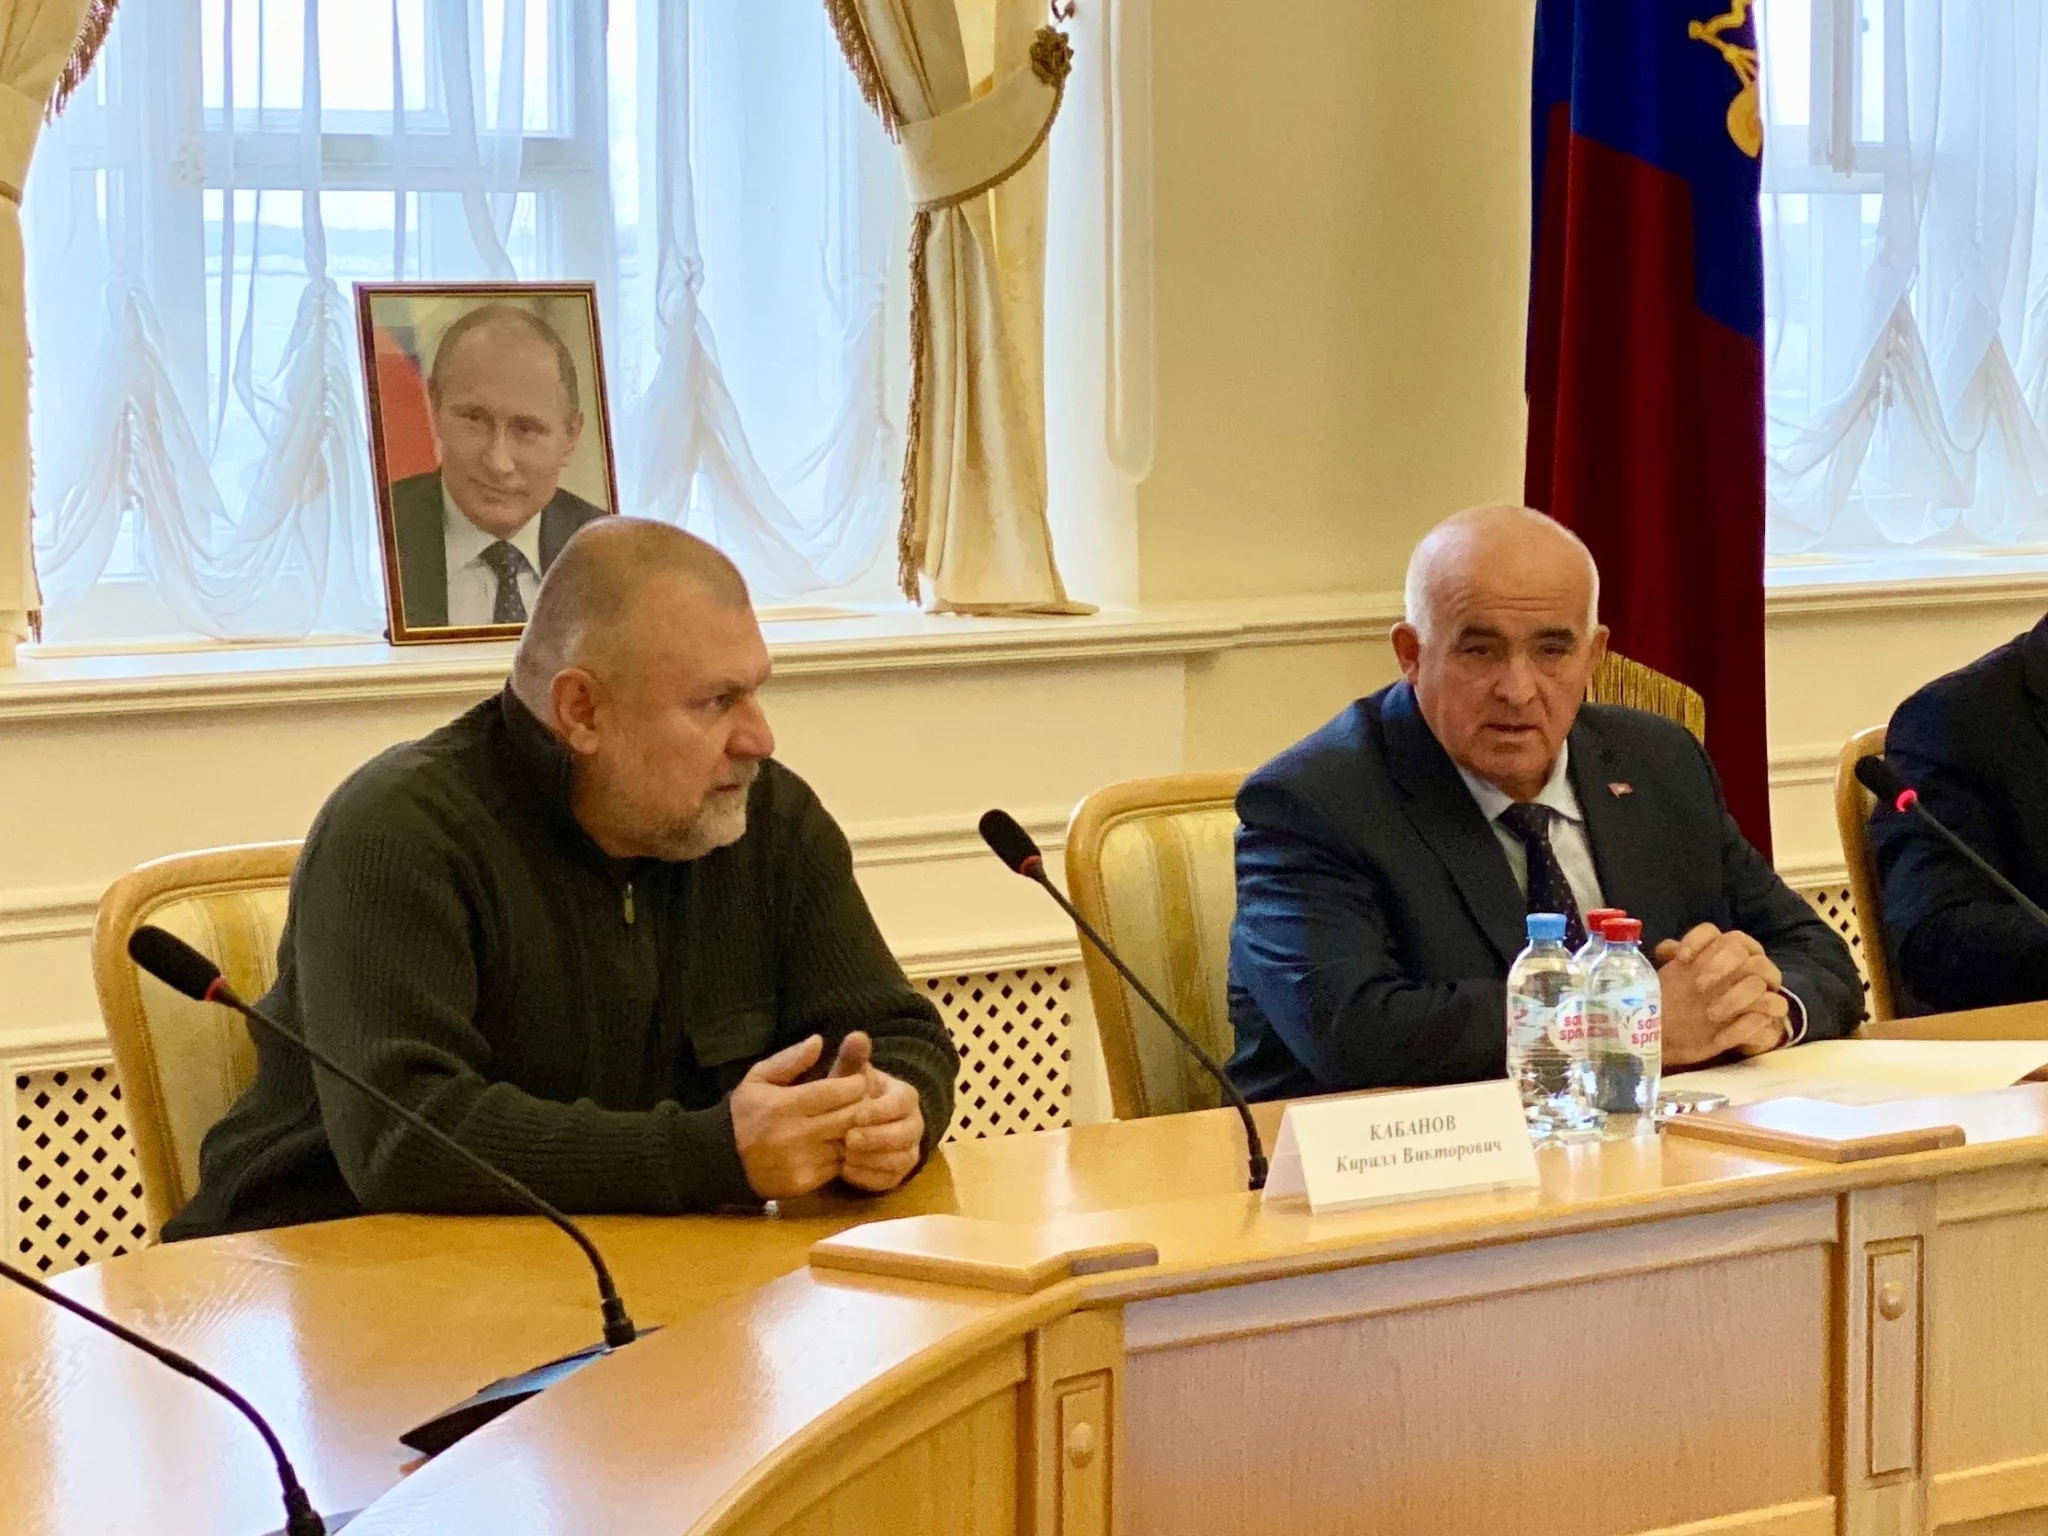 Член Совета при президенте России Кирилл Кабанов обсудил с костромским губернатором важные дела